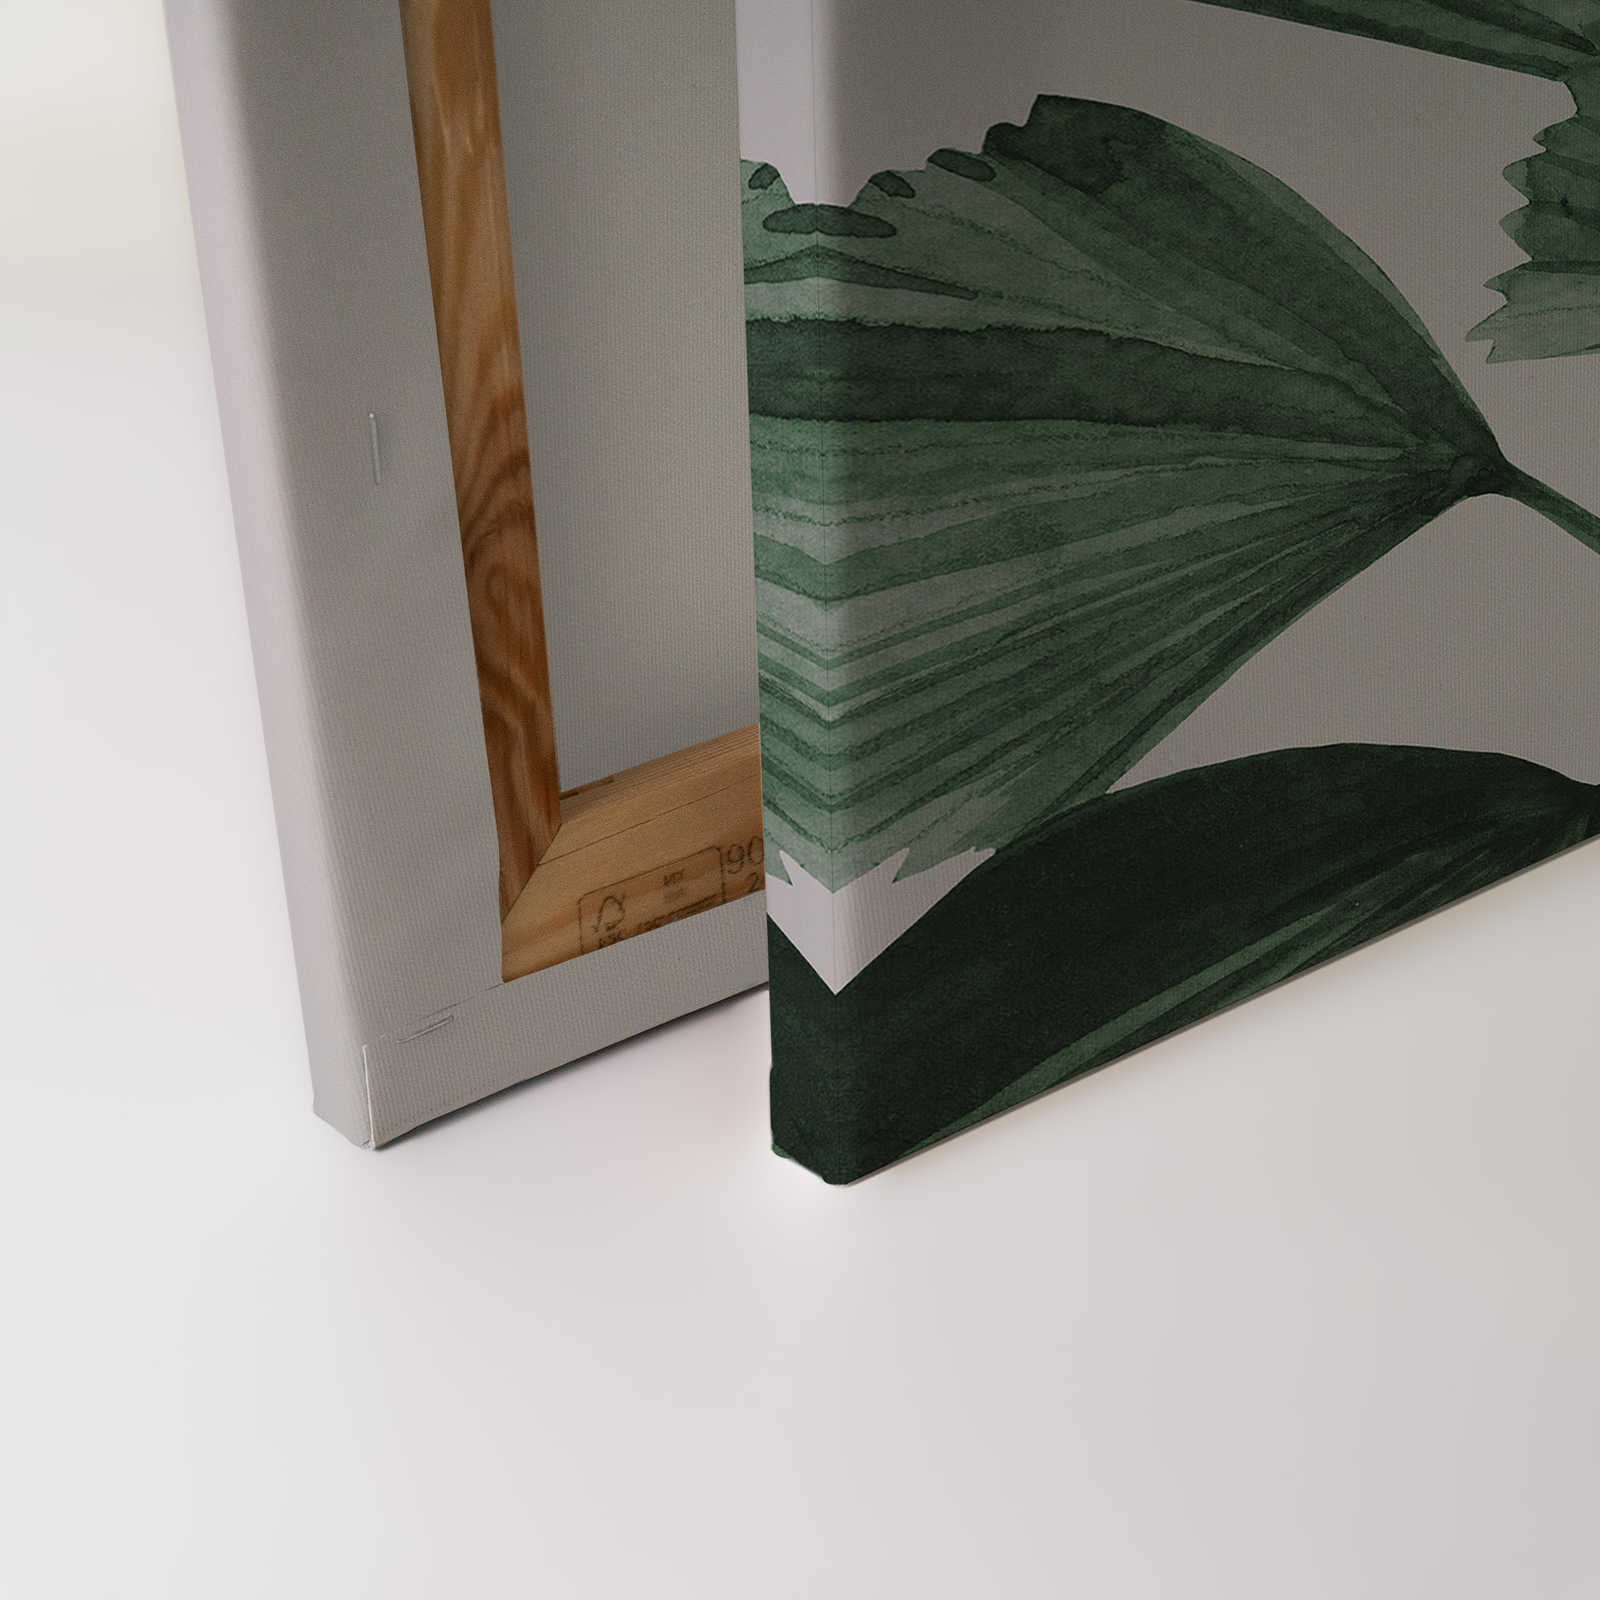             Cuadro en lienzo con grandes hojas de palmera rayera - 0,90 m x 0,60 m
        